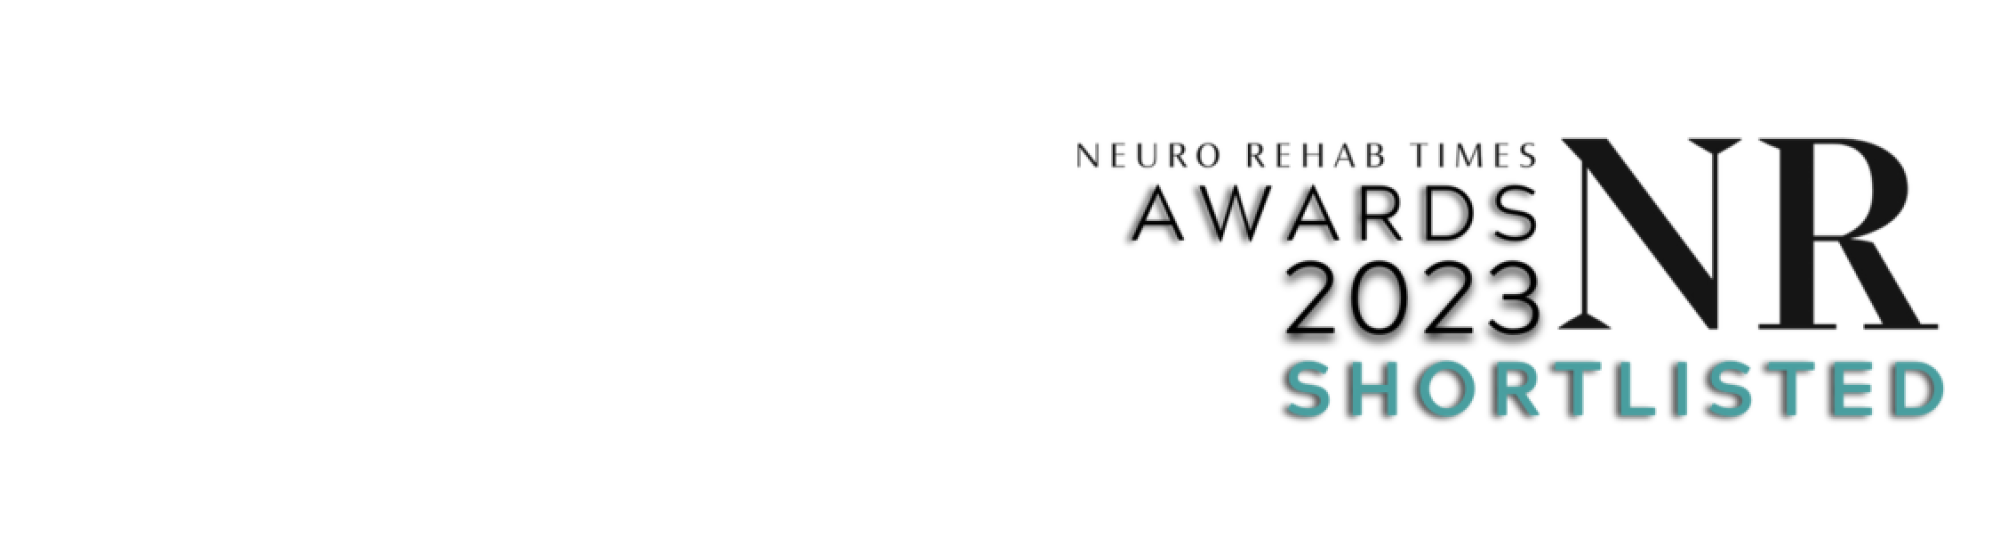 NRTimes Award logo